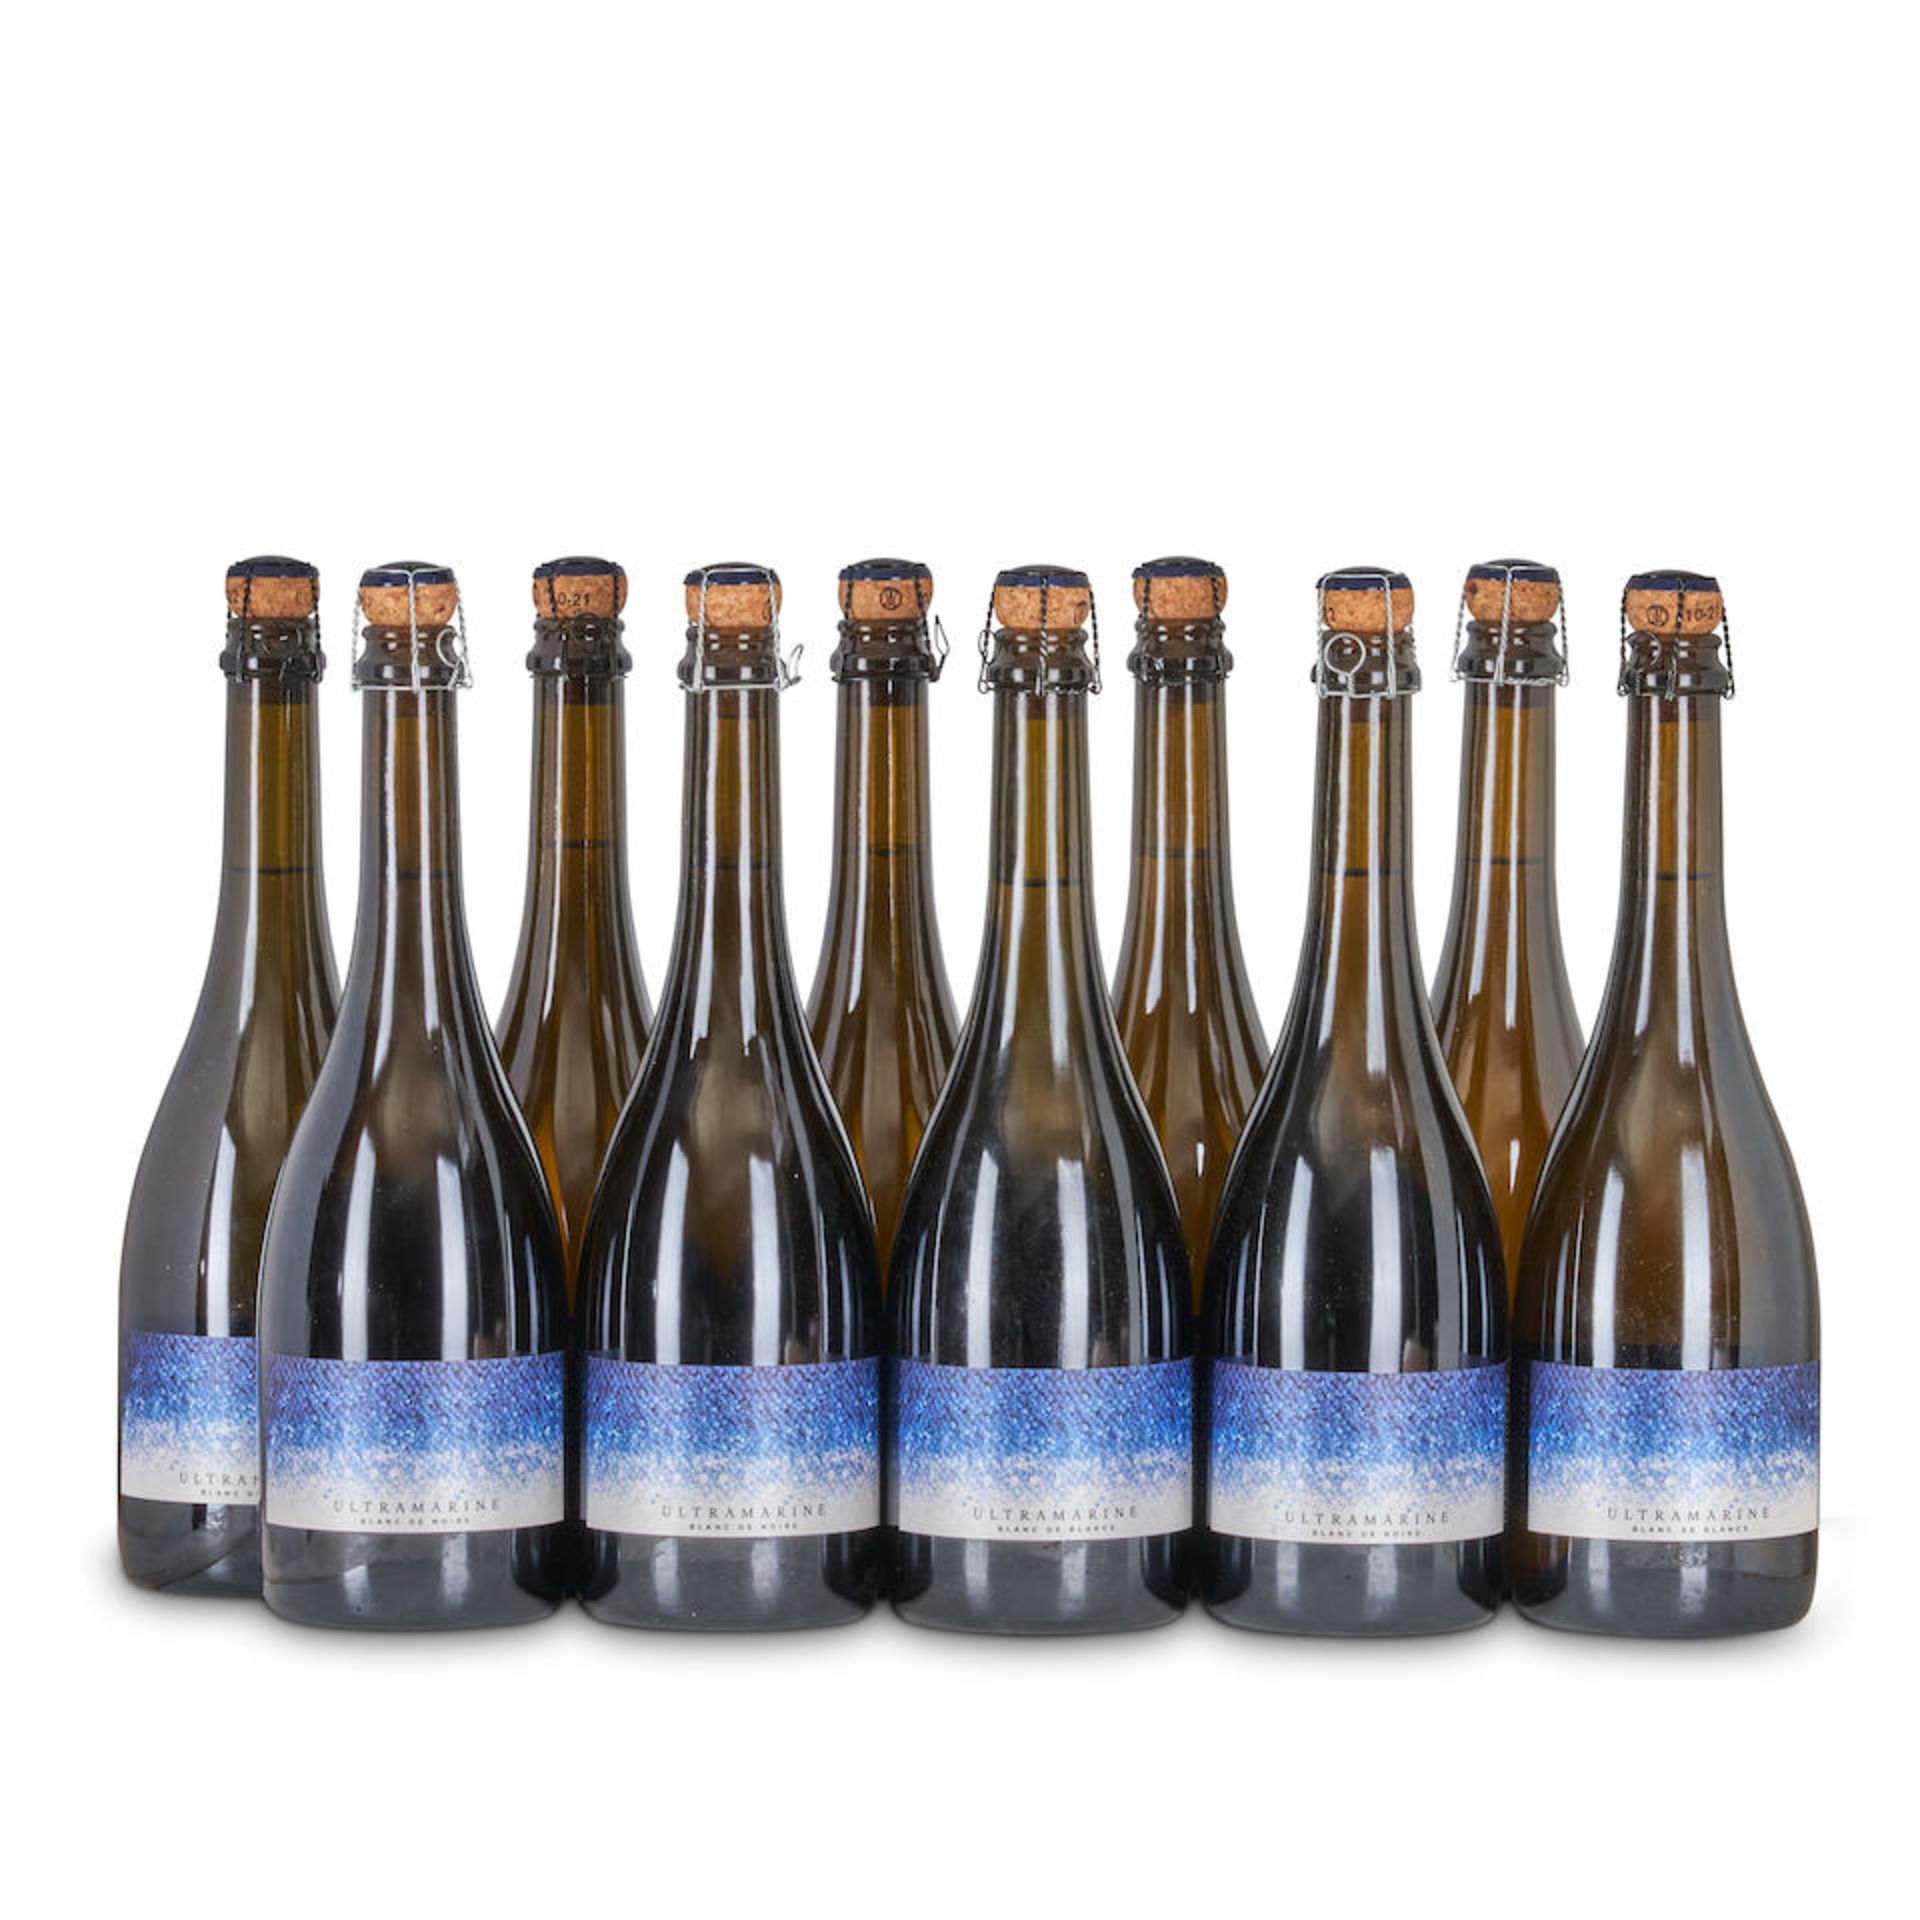 Mixed Ultramarine (10 bottles)